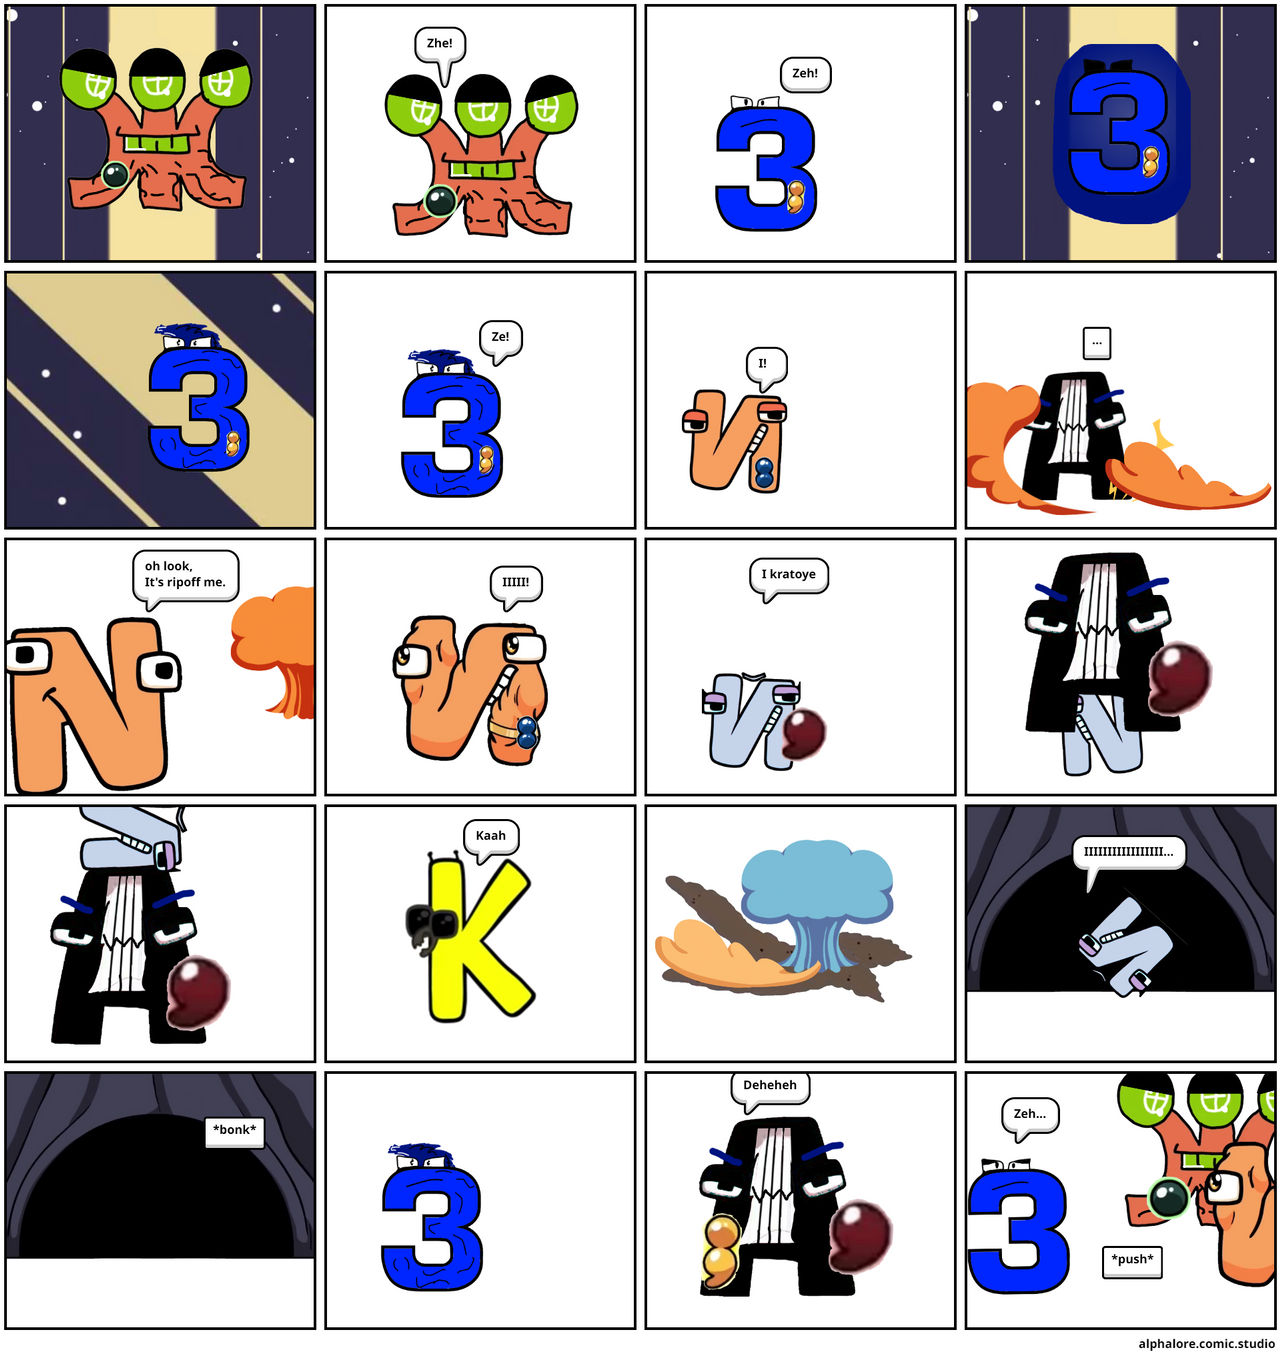 Spanish alphabet lore Y part 1. - Comic Studio